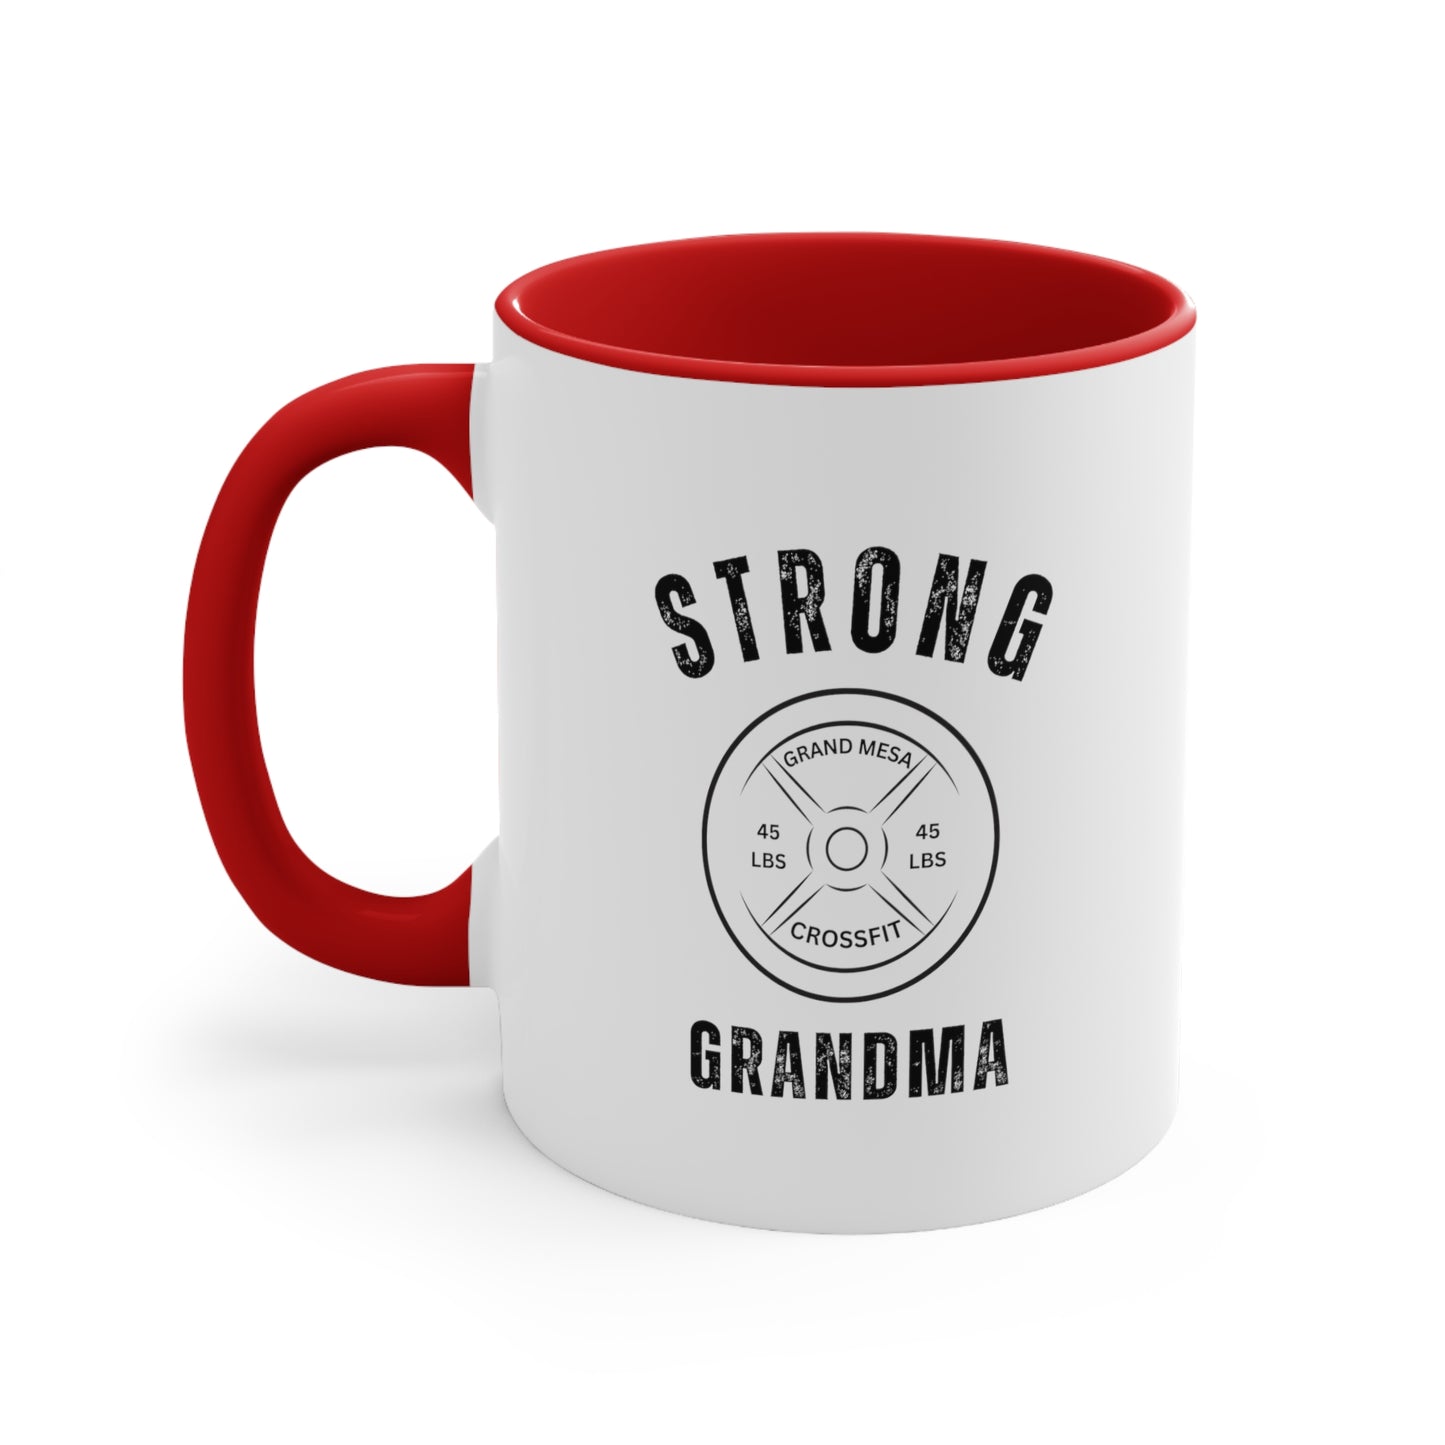 Strong Grandma Mug